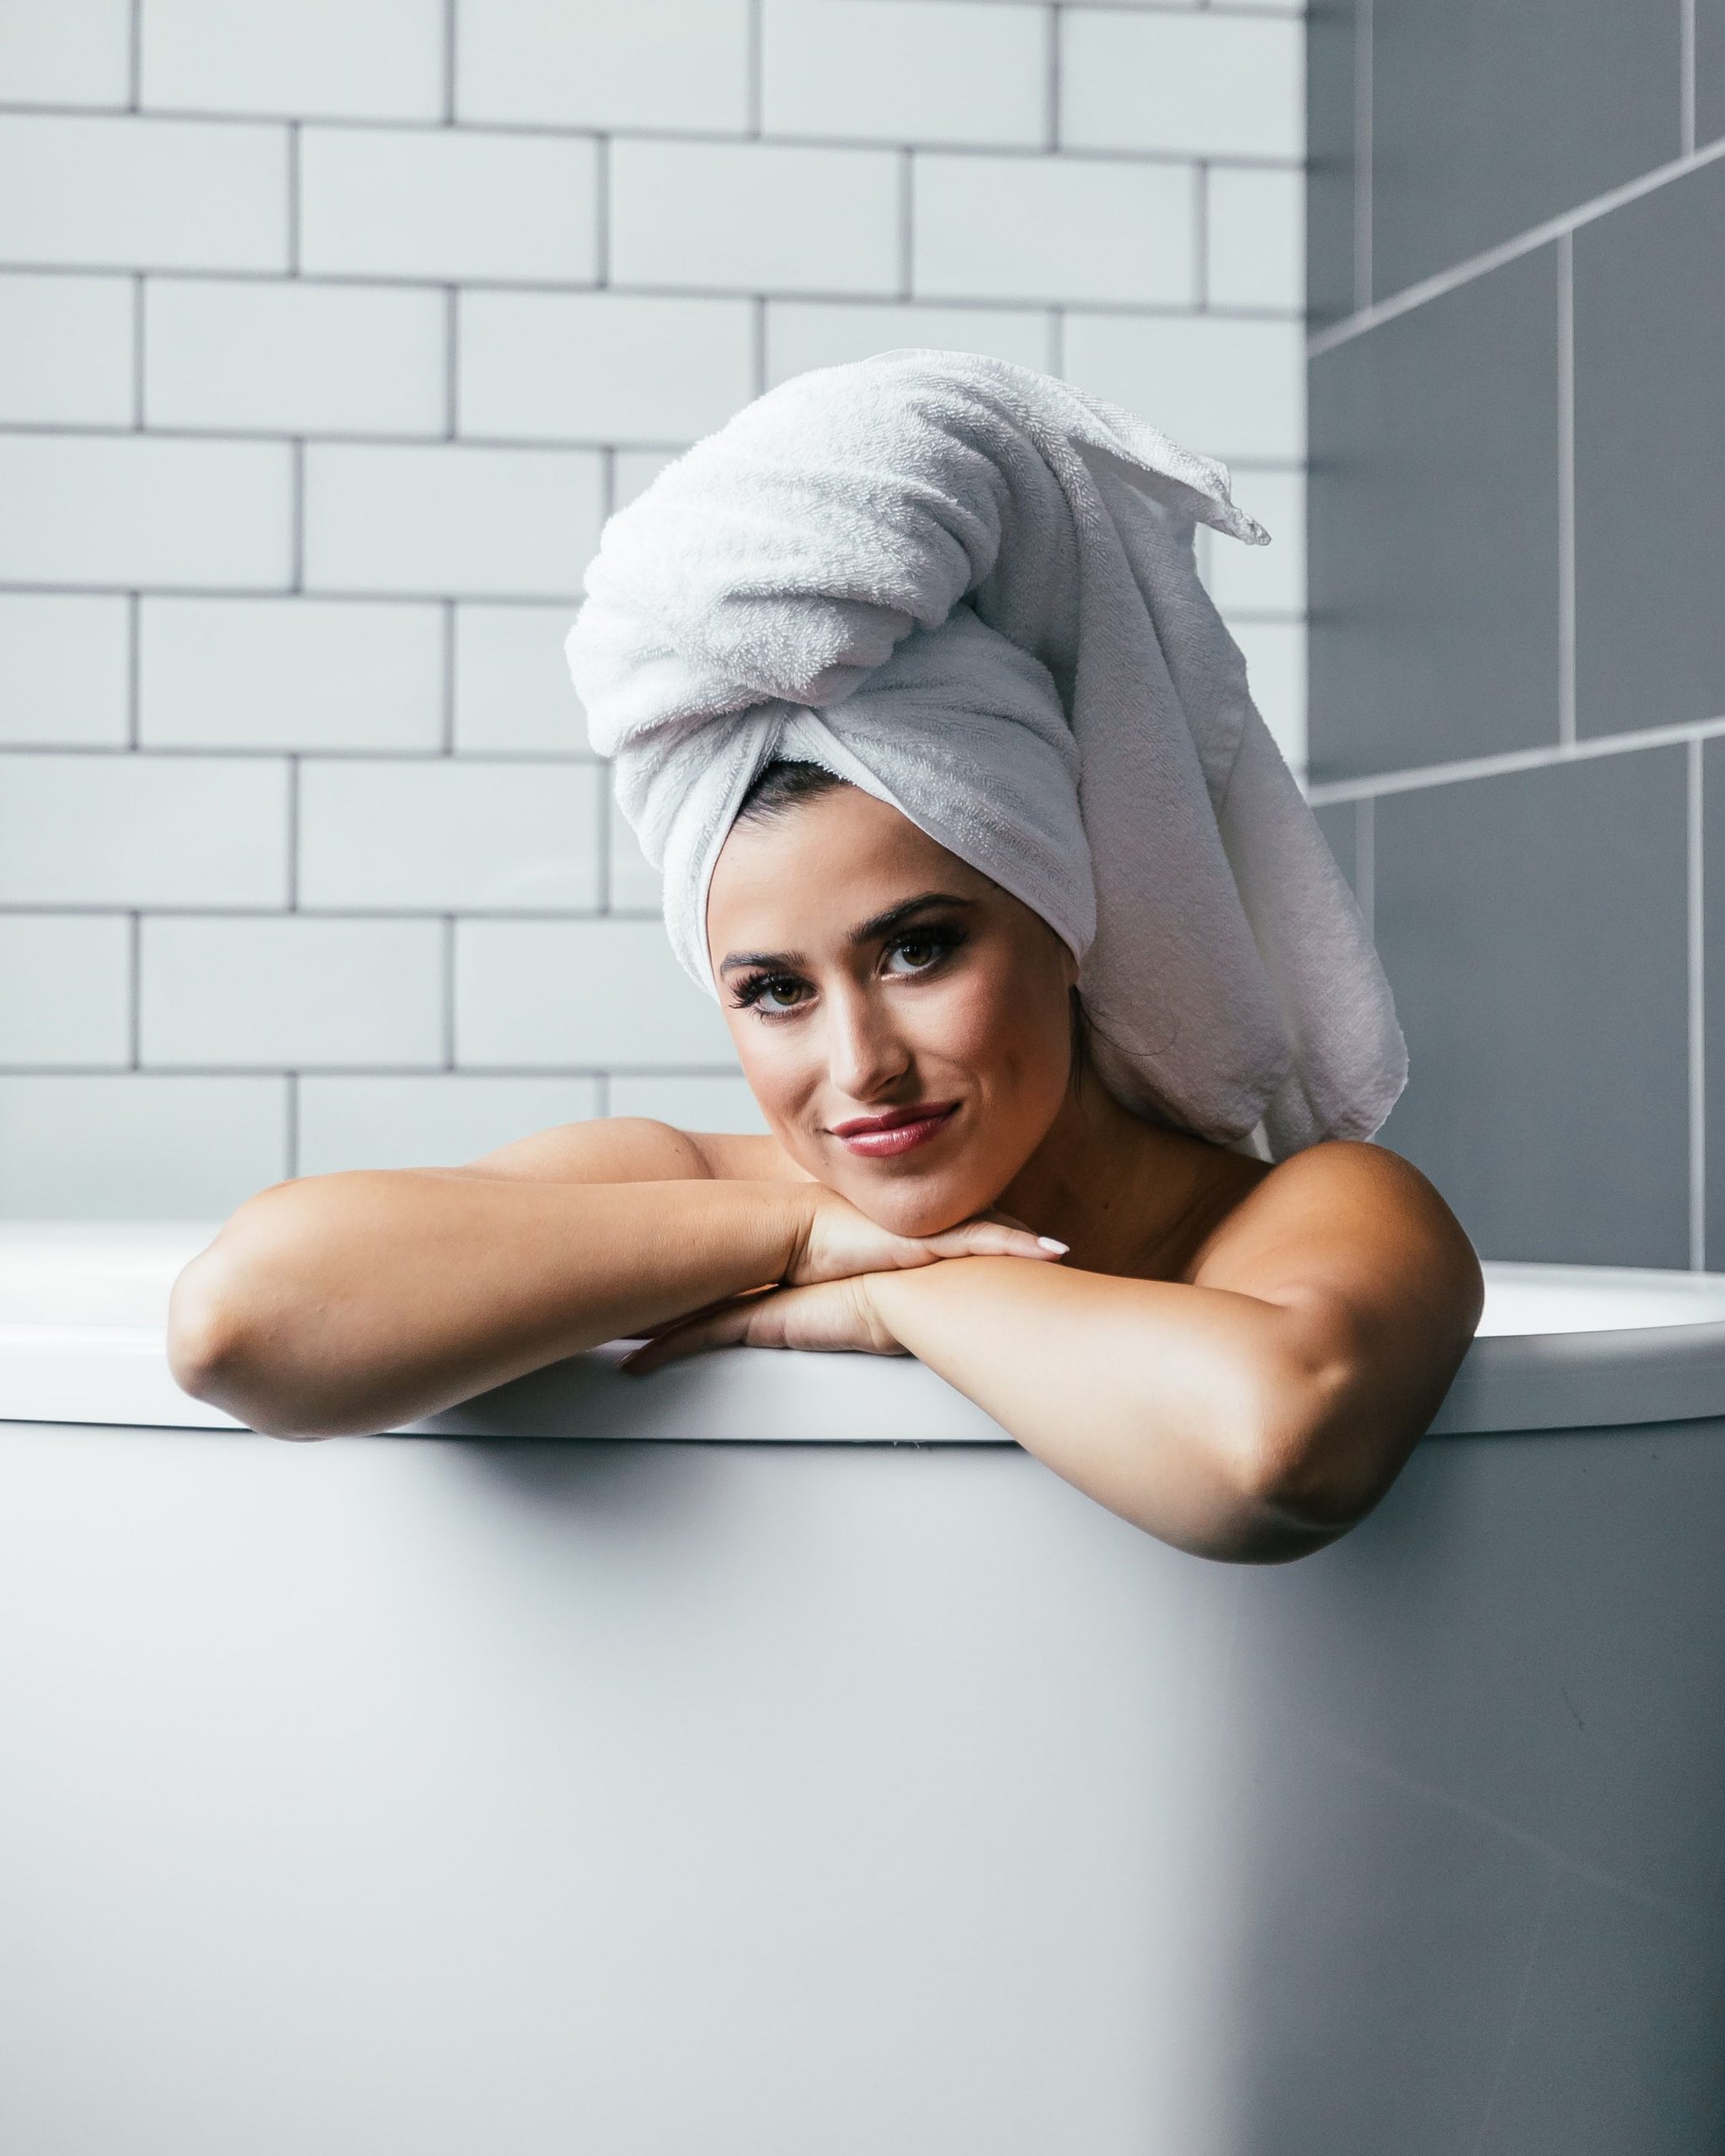 बालों धोने के बाद तौलिए से लपेटकर न रखें बाल, हो सकती है गंभीर बीमारी